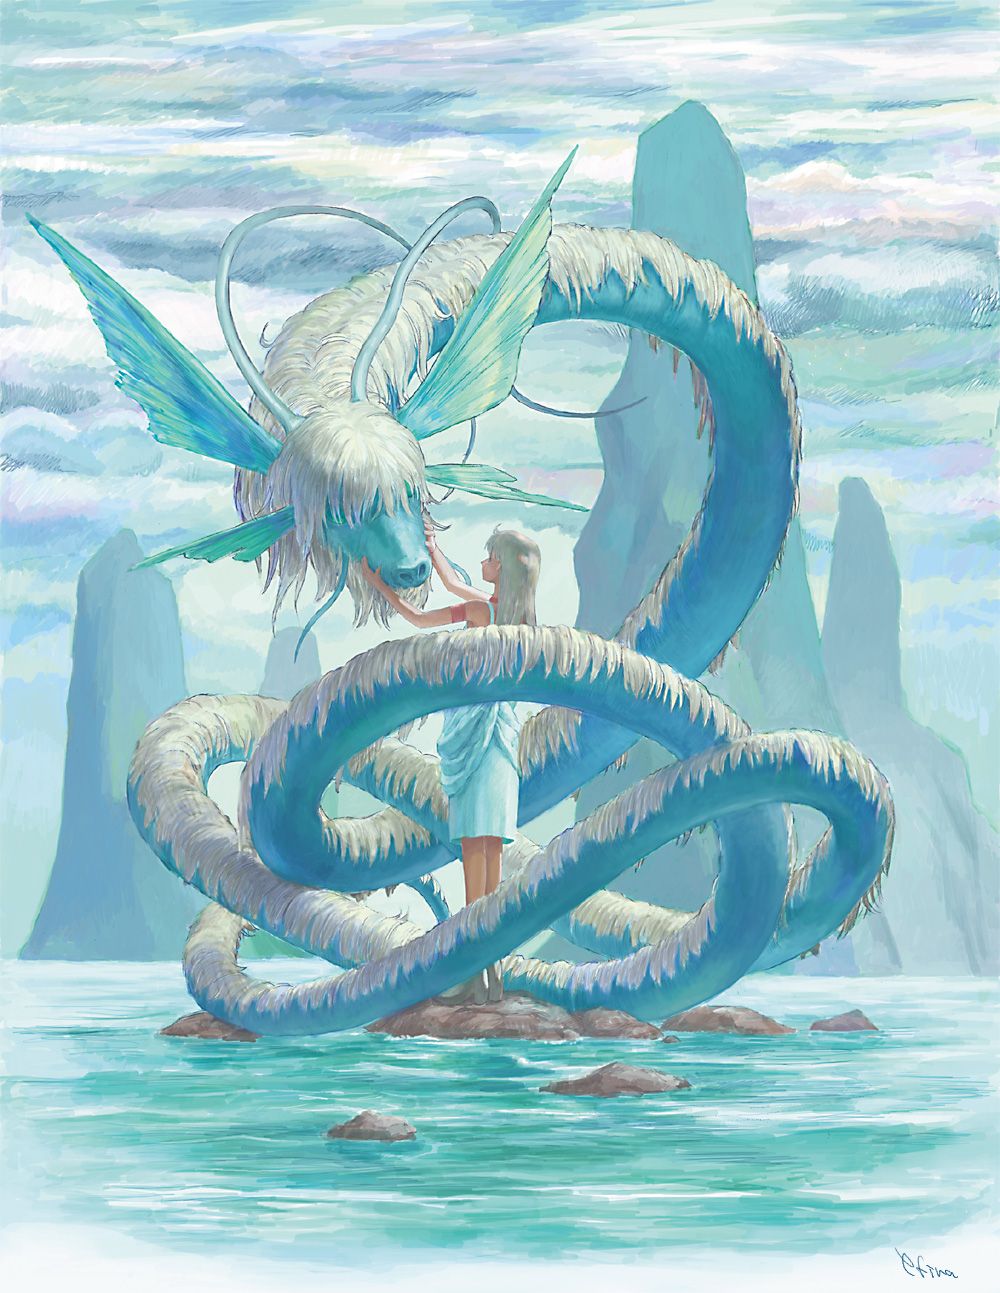 Water Dragon Image